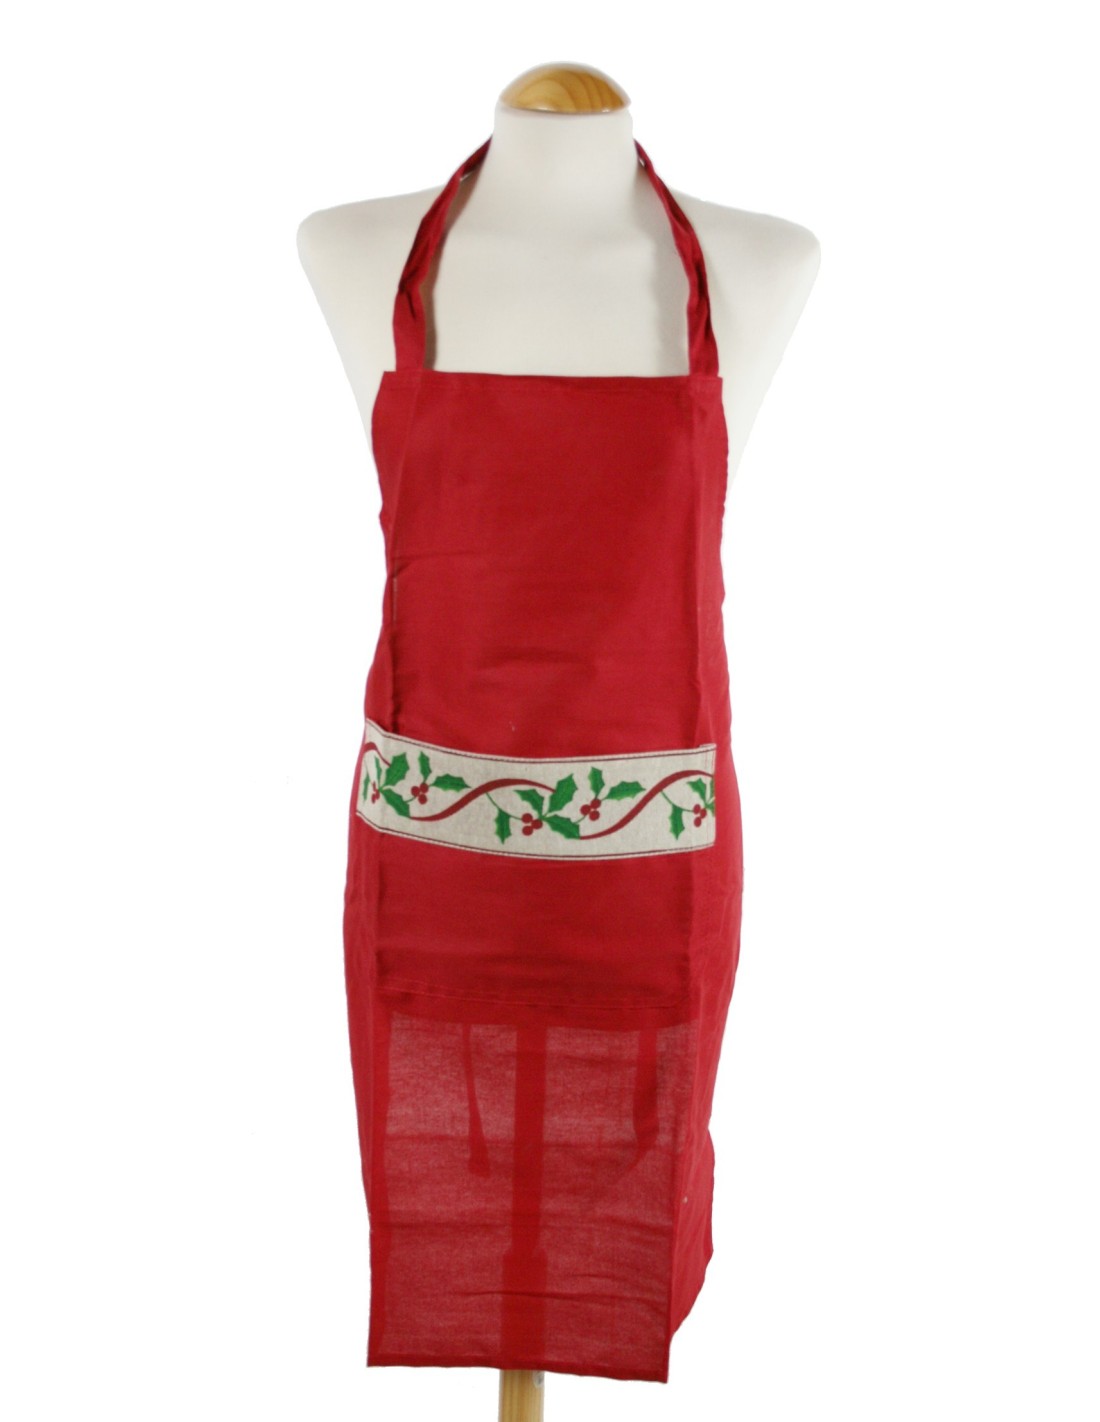 Delantal para cocina con diseño Navideño de color rojo ideal para Navidad.